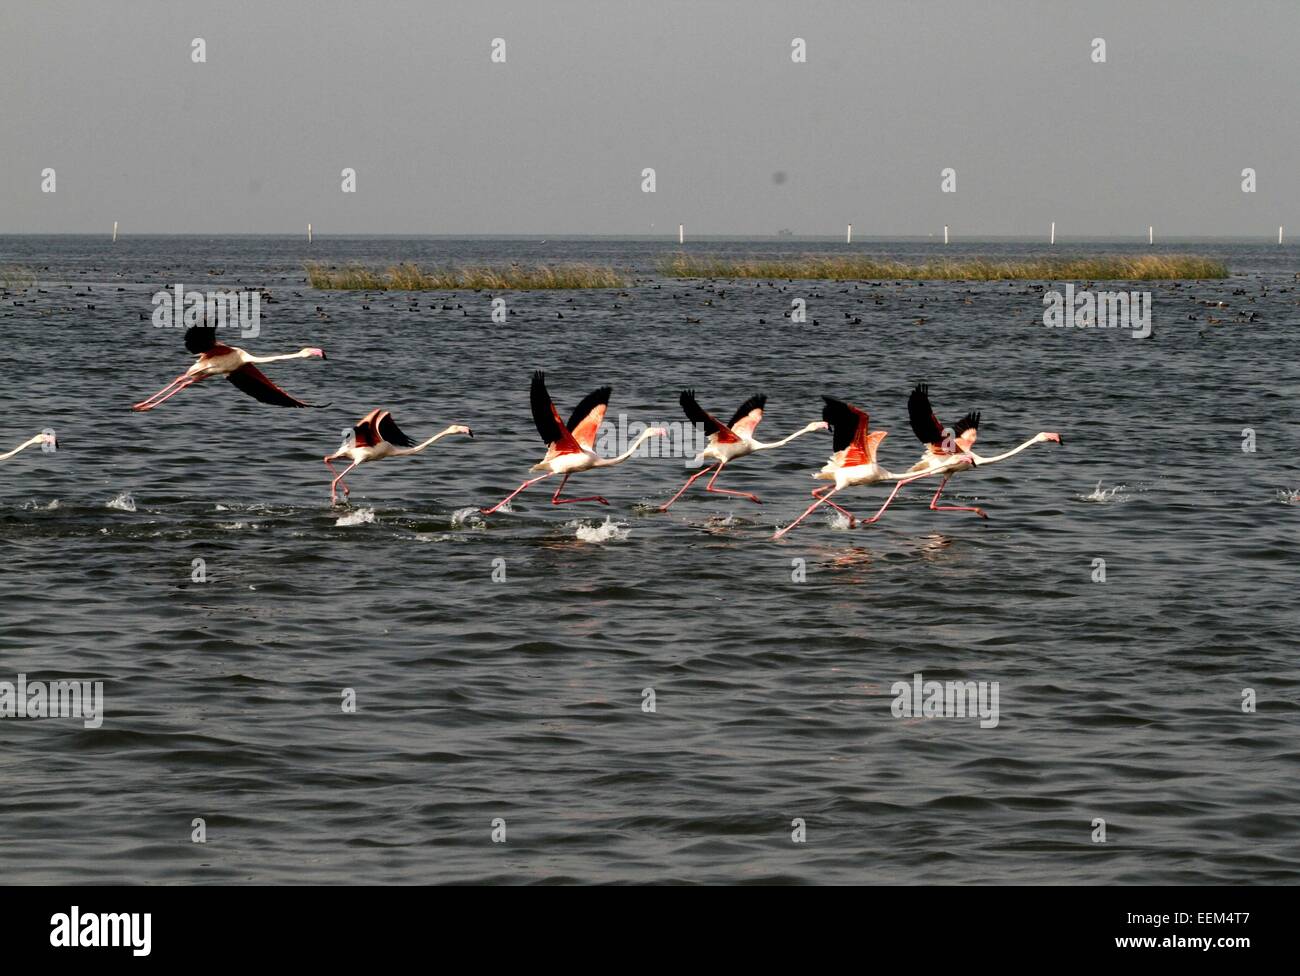 Bhubaneswar. 19 Jan, 2015. Photo prise le 19 janvier 2015 montre flamants migrateurs leurs ailes battantes de l'eau du lac Chilka comme ils changent de place pour l'alimentation dans le district du sud de l'Orissa Khurda près de Bhubaneswar, capitale de l'état indien de l'Orissa, en Inde. Des millions d'oiseaux migrateurs arrivent dans le lac Chilka chaque année au début de l'hiver et revenir avant la saison de la mousson. © Stringer/Xinhua/Alamy Live News Banque D'Images